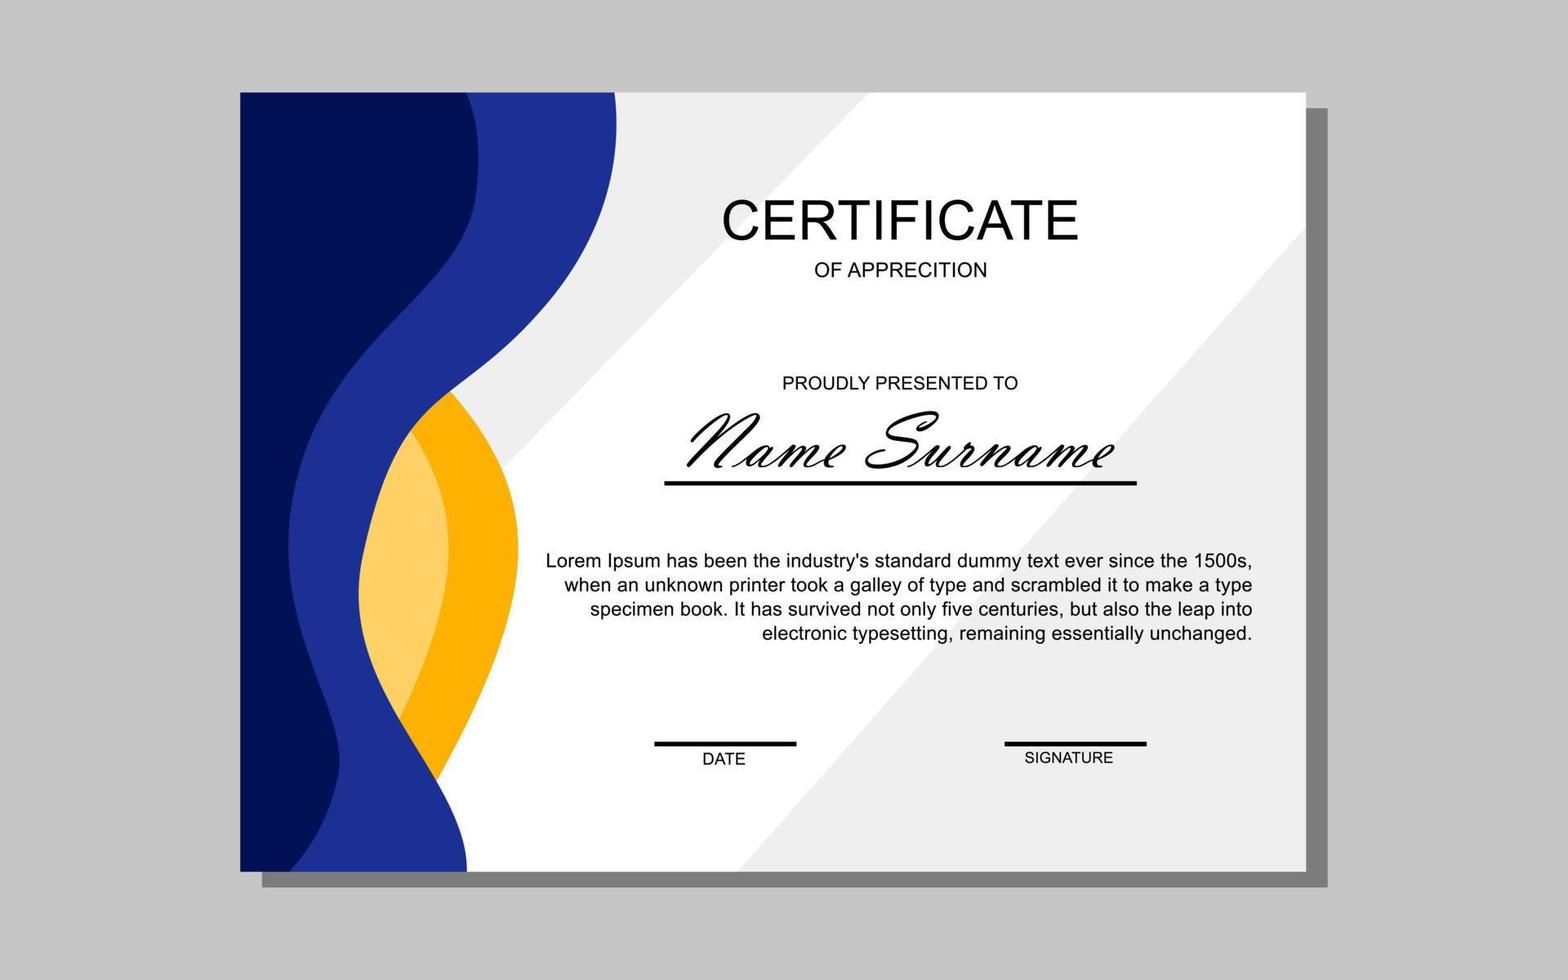 diseño de certificado en estilo moderno amarillo y azul vector